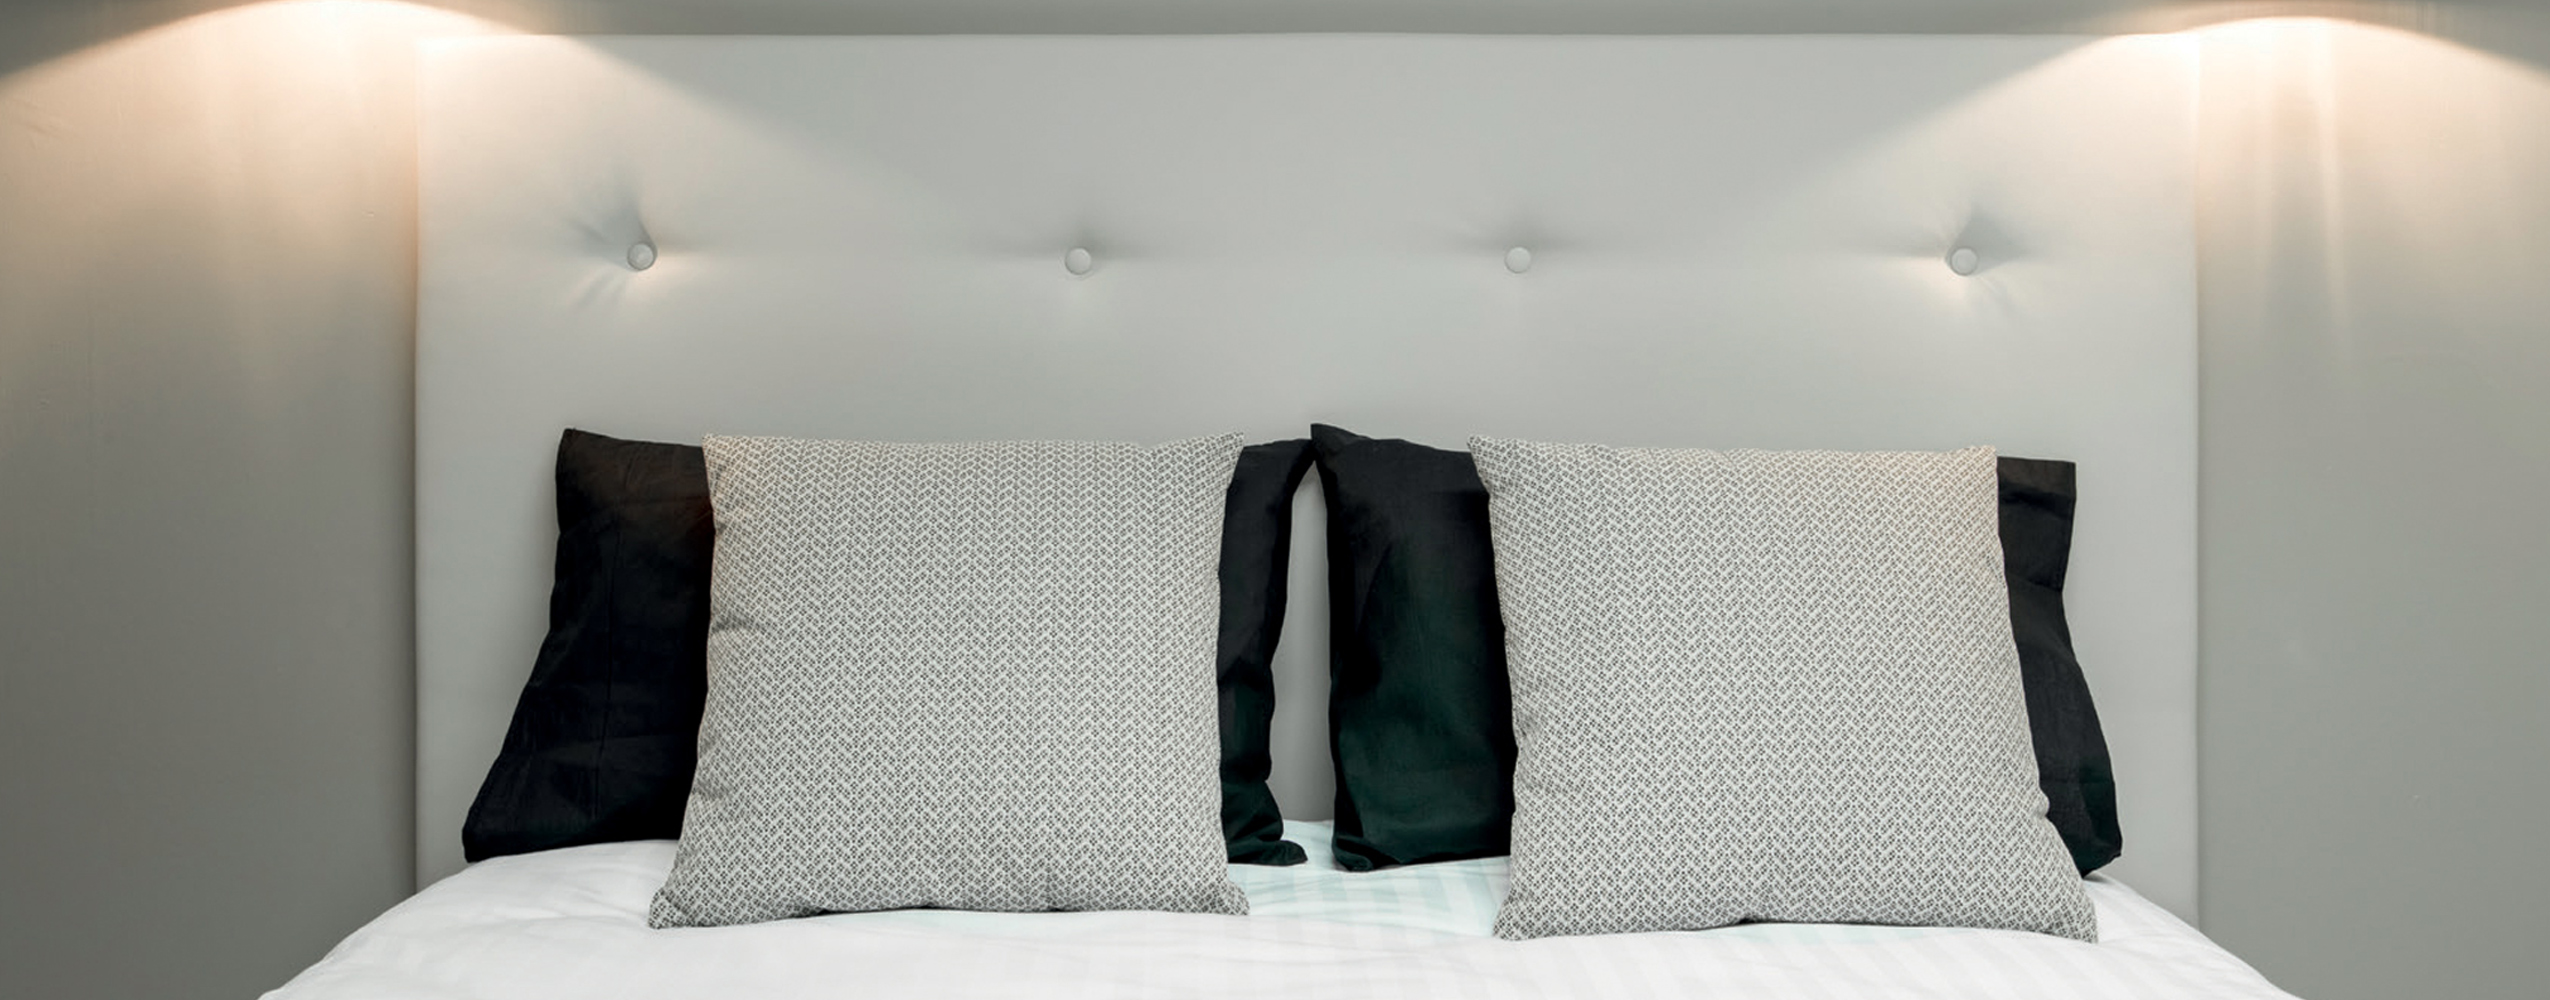 Tête de lit hôtel capitonnée avec coussins assortis